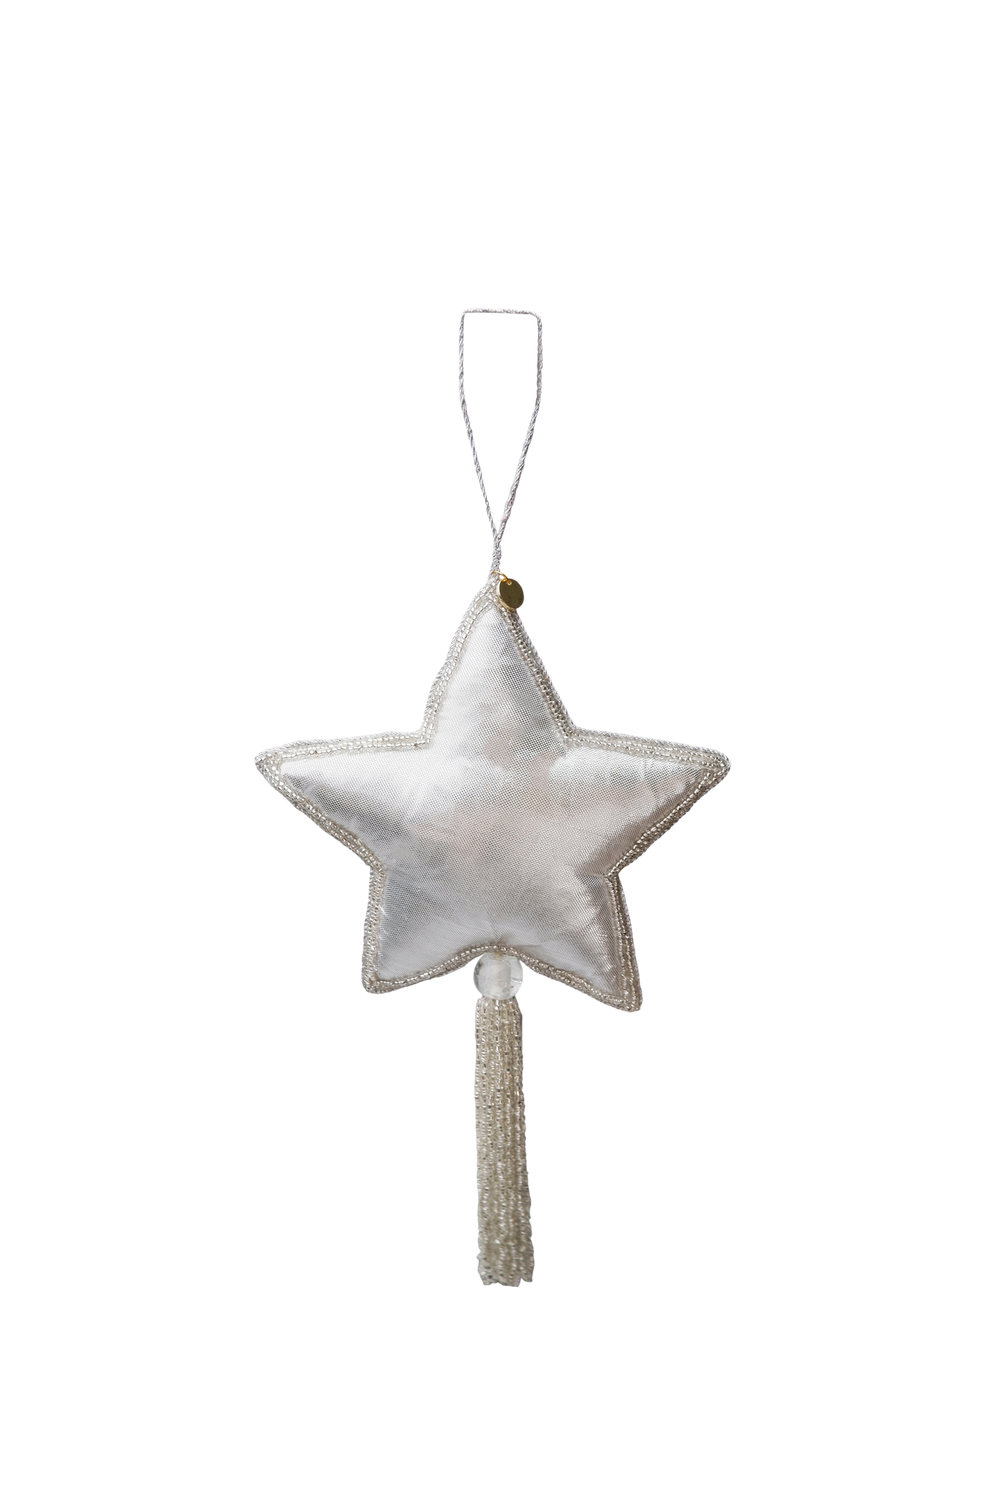 Black Colour Julepynt - BcXL Tassel Star Christmas Ornament i Sølv